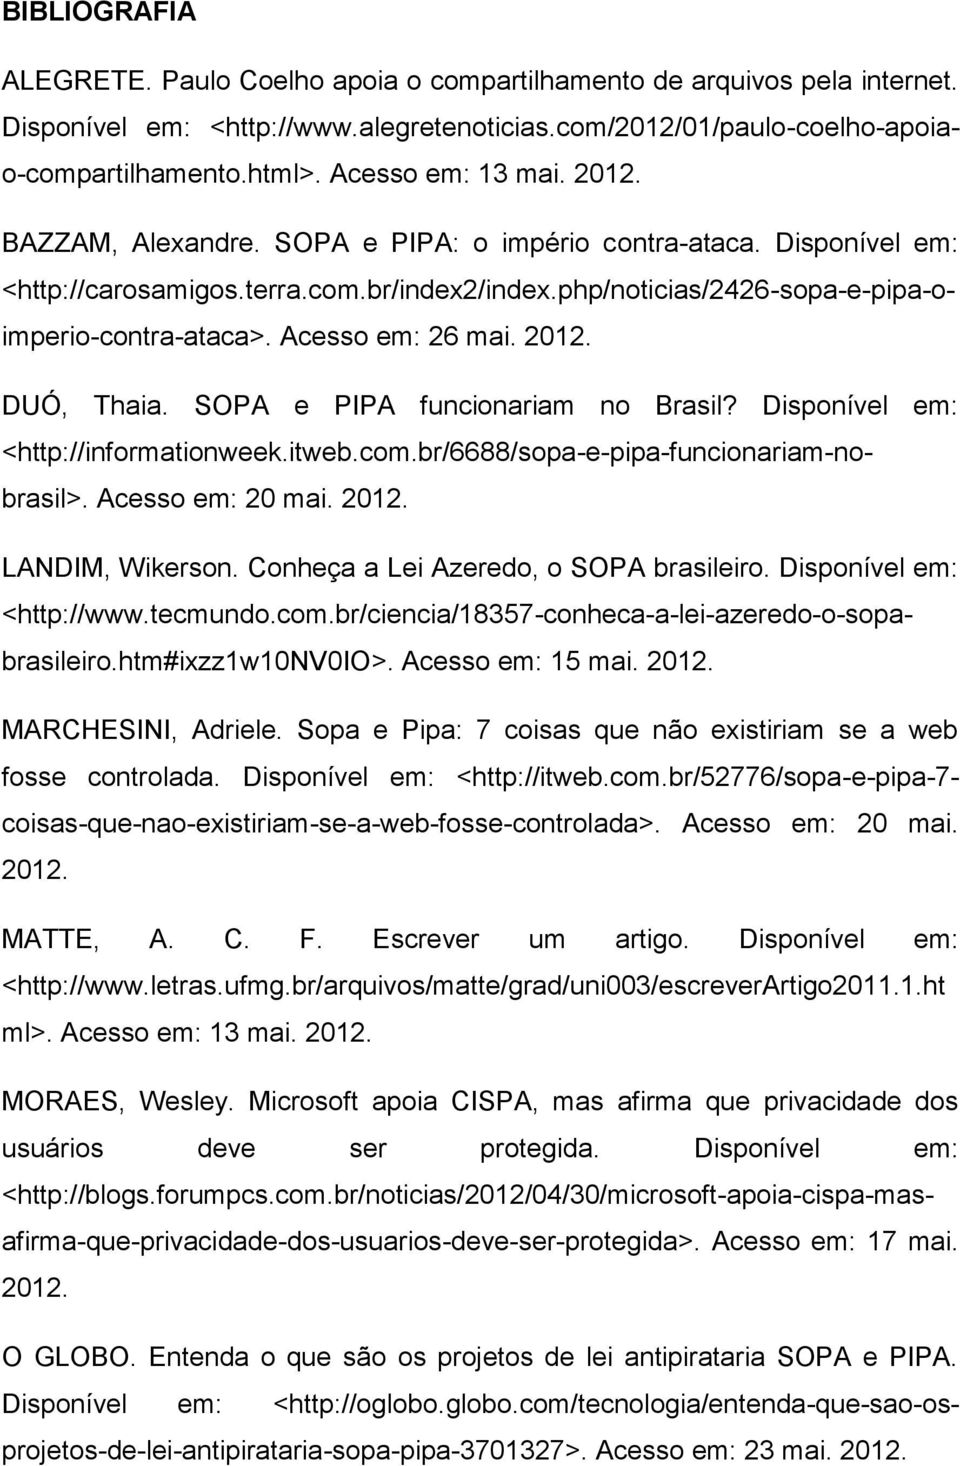 Acesso em: 26 mai. 2012. DUÓ, Thaia. SOPA e PIPA funcionariam no Brasil? Disponível em: <http://informationweek.itweb.com.br/6688/sopa-e-pipa-funcionariam-nobrasil>. Acesso em: 20 mai. 2012. LANDIM, Wikerson.